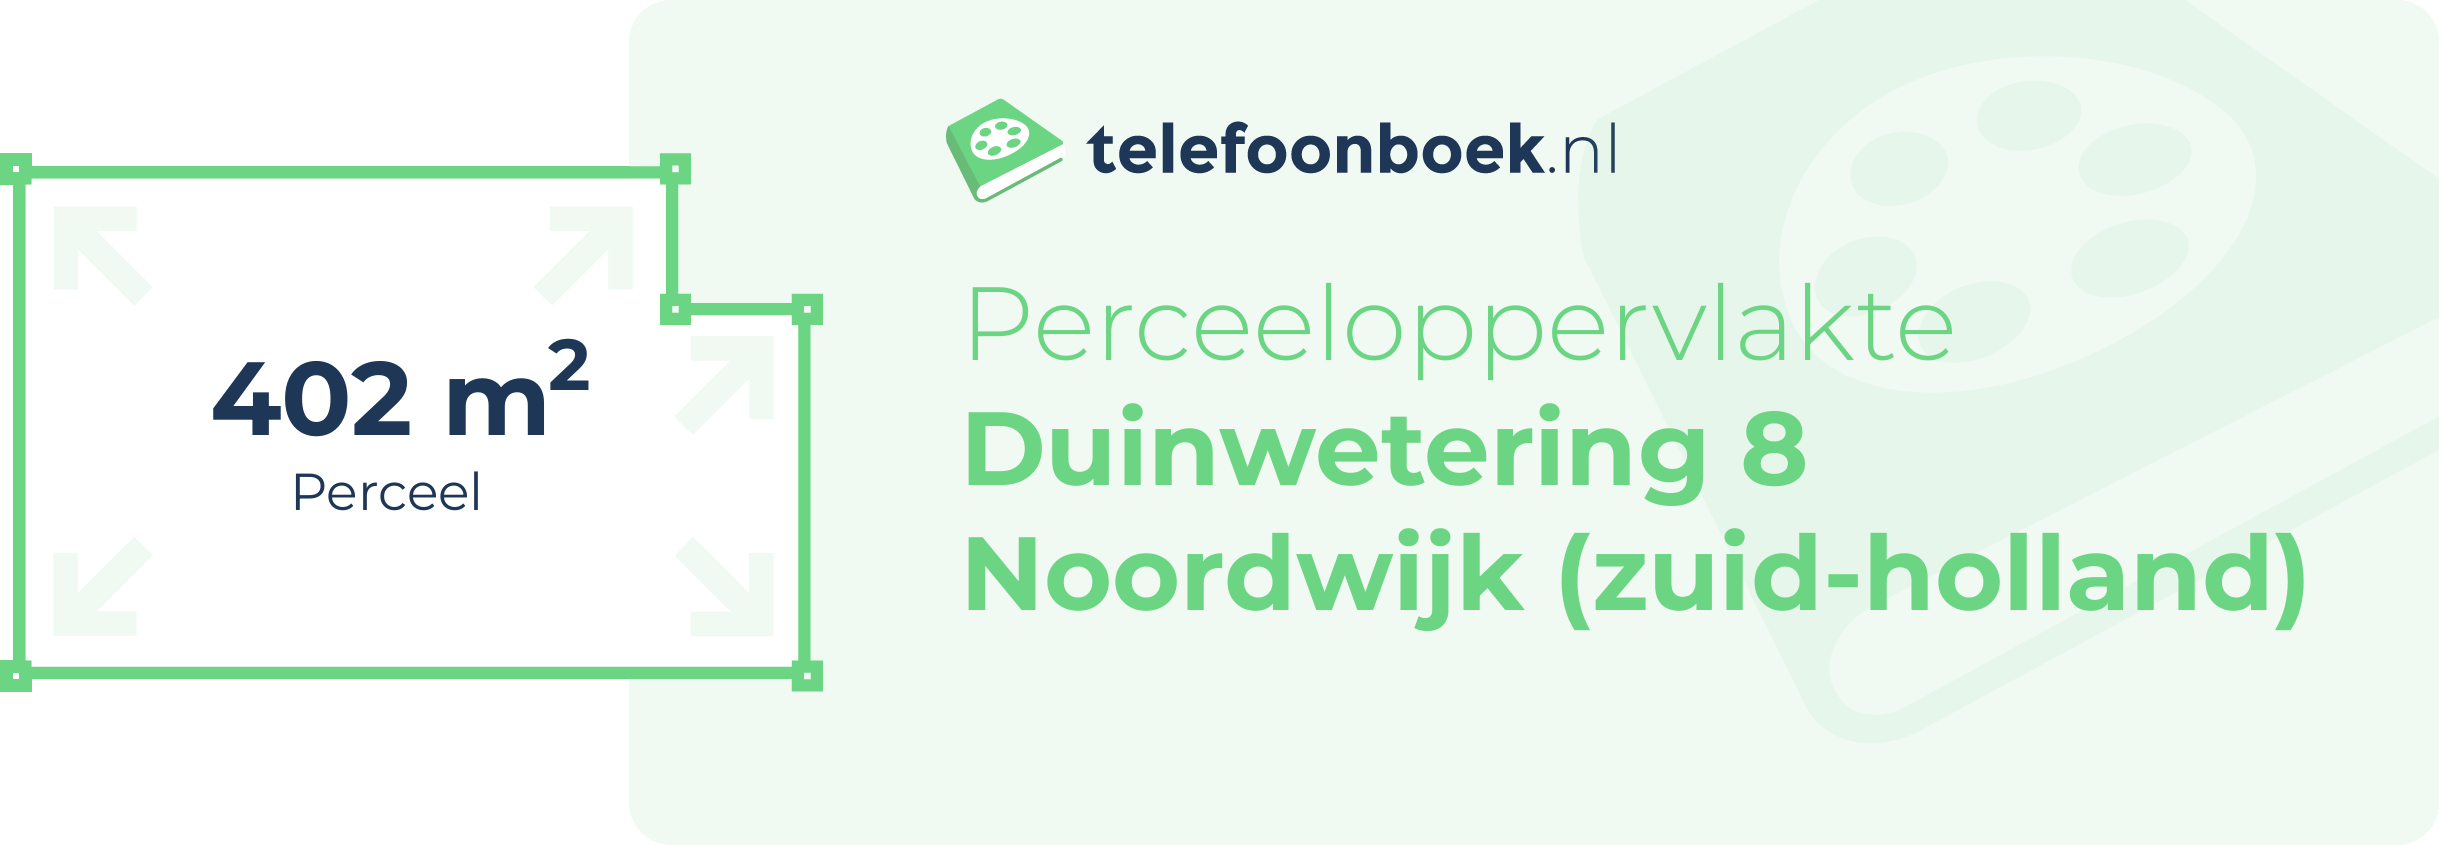 Perceeloppervlakte Duinwetering 8 Noordwijk (Zuid-Holland)